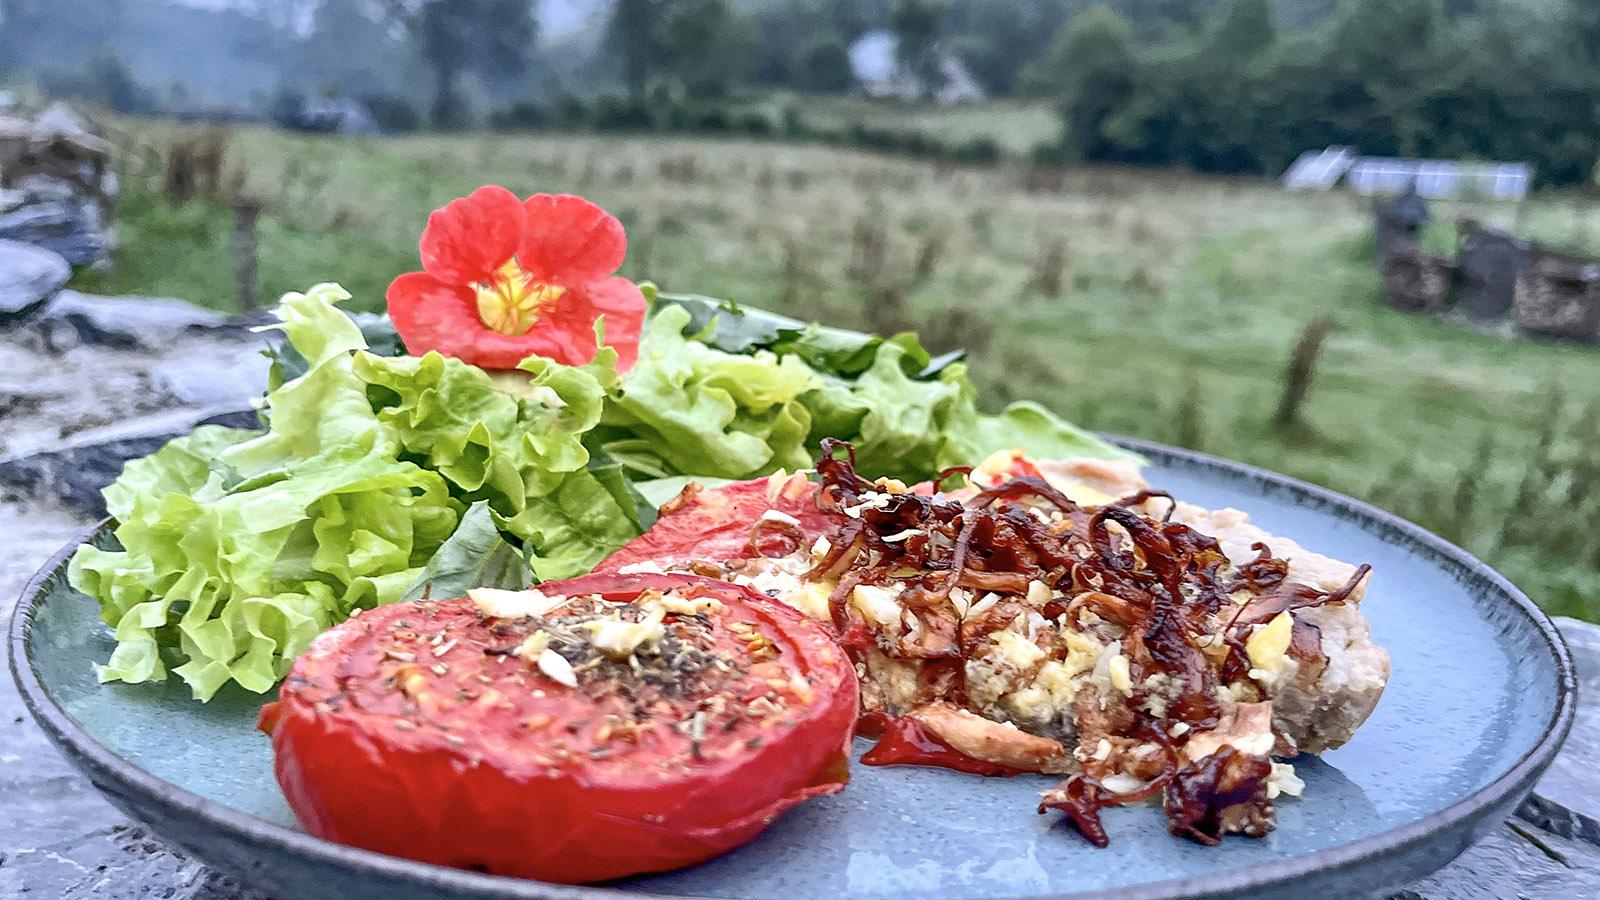 Komponiert aus den Zutaten des Gartens und des nahen Waldes: Pilz-Tarte mit gründem Salat, gewürzter Tomate und einer Kapuzinerkresse-Blüte als Deko. Foto: Hilke Maunder